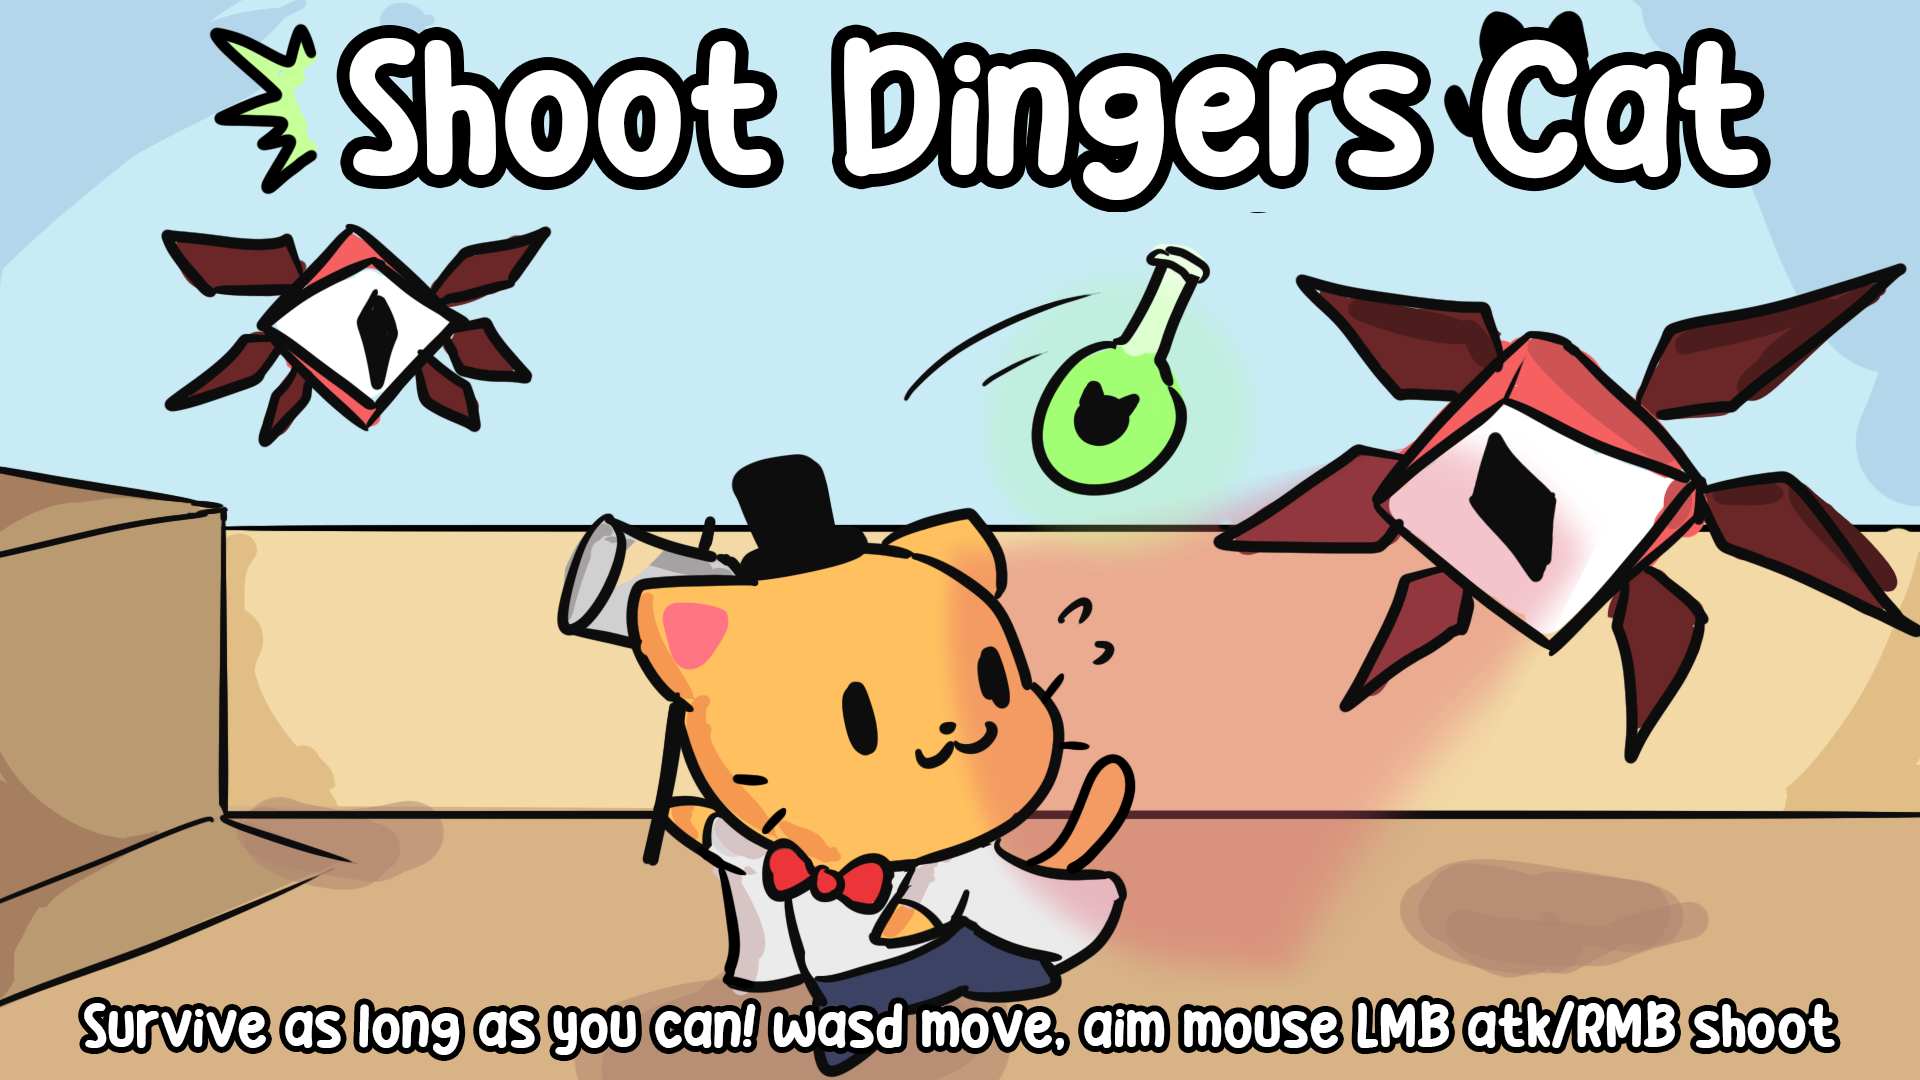 ShootDinger's Cat